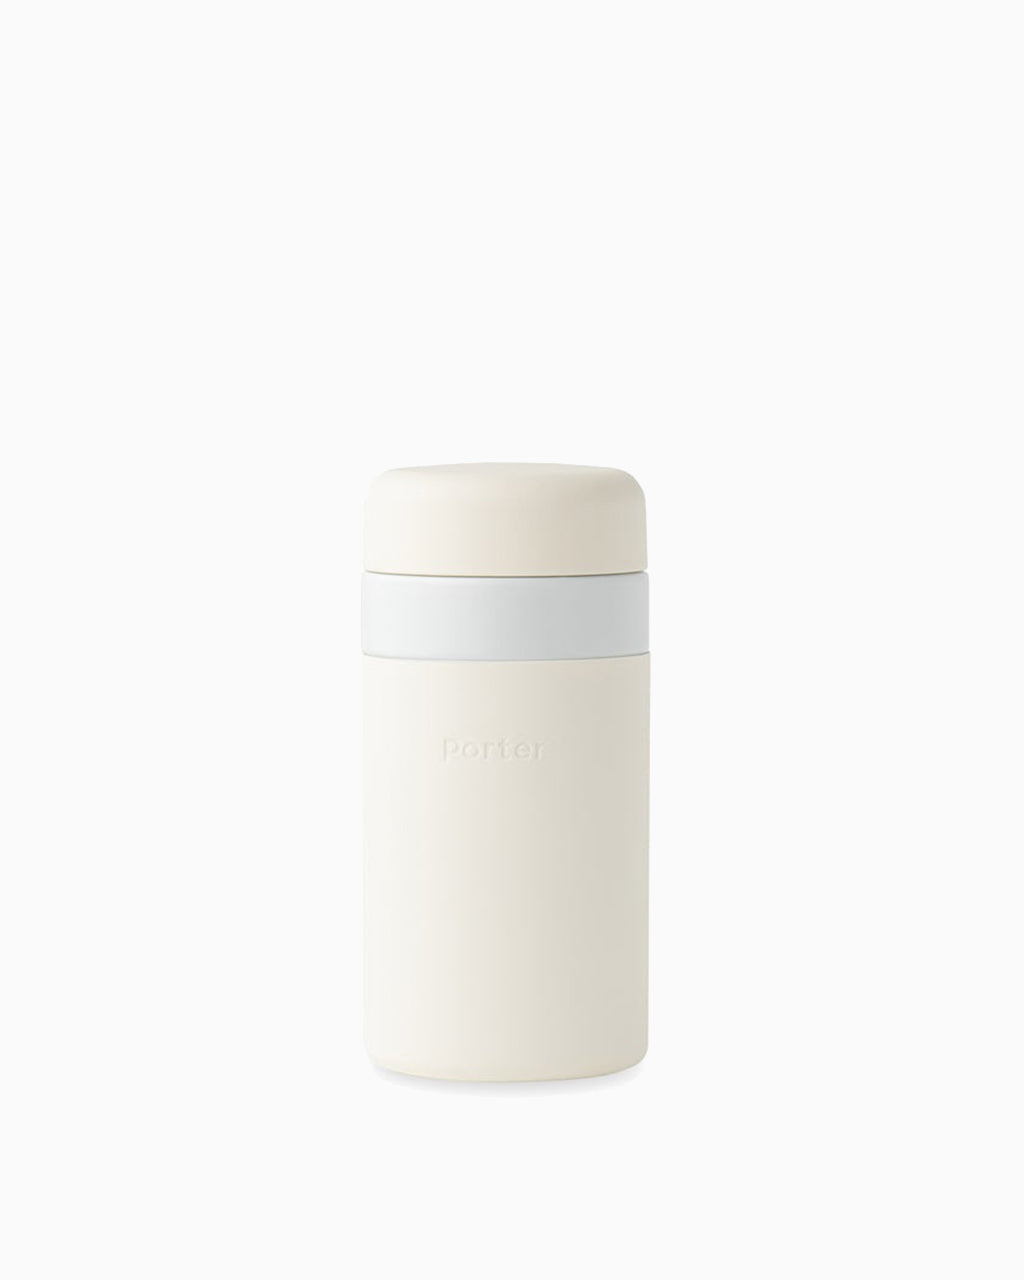 Porter Insulated Bottle 16oz - Cream